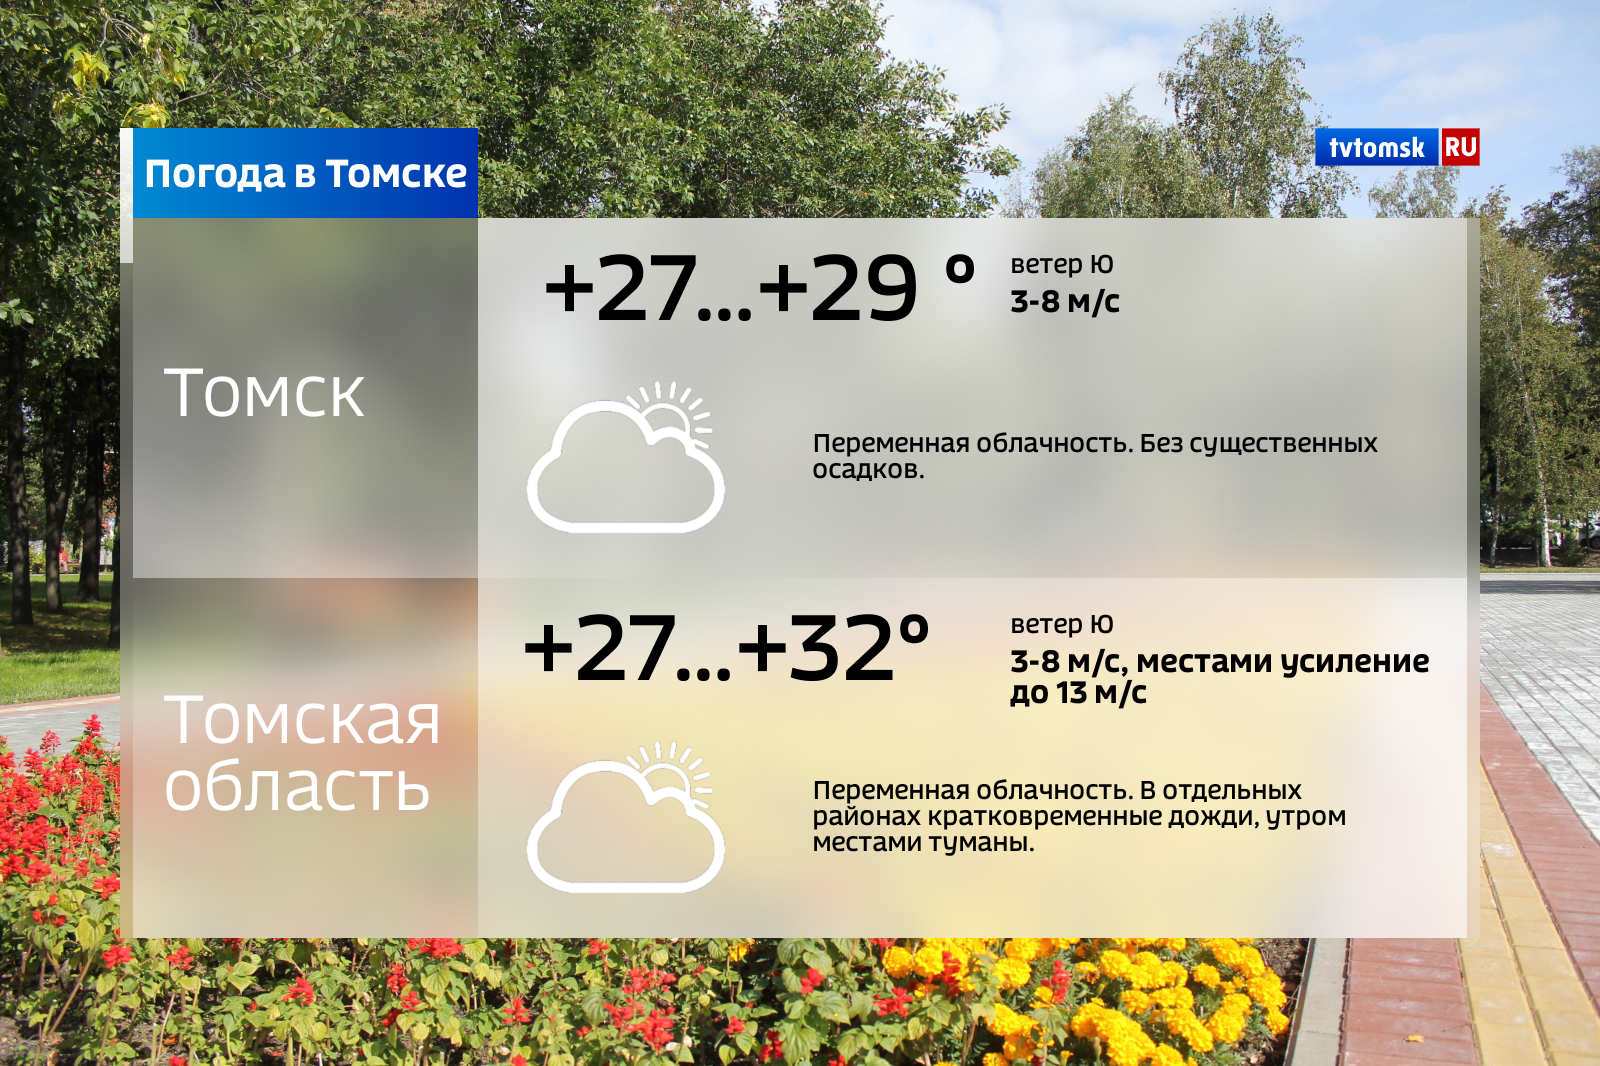 Погода в томском. Погода в Томске. Погода в Томске сегодня. Какая погода в Томске. Томск погода Томск.